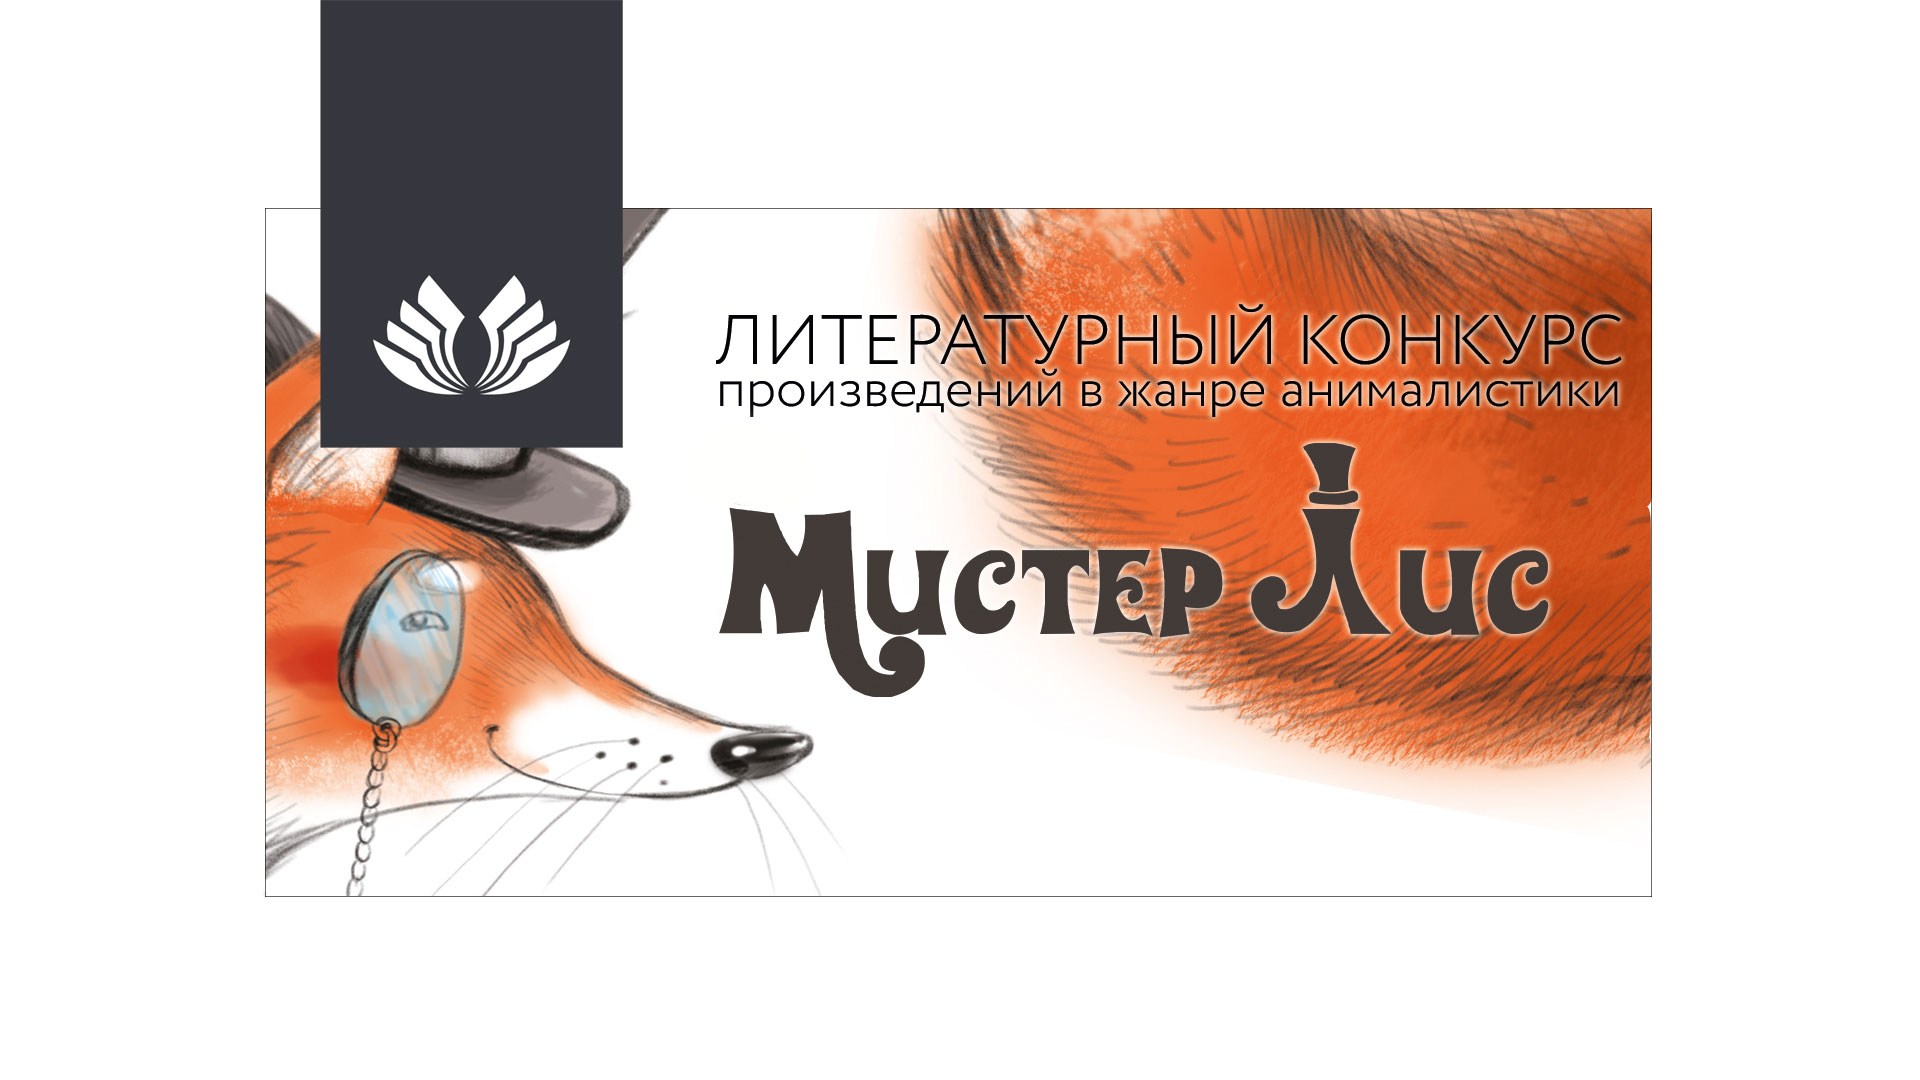 Литературный конкурс «Мистер Лис» ждет истории о животных